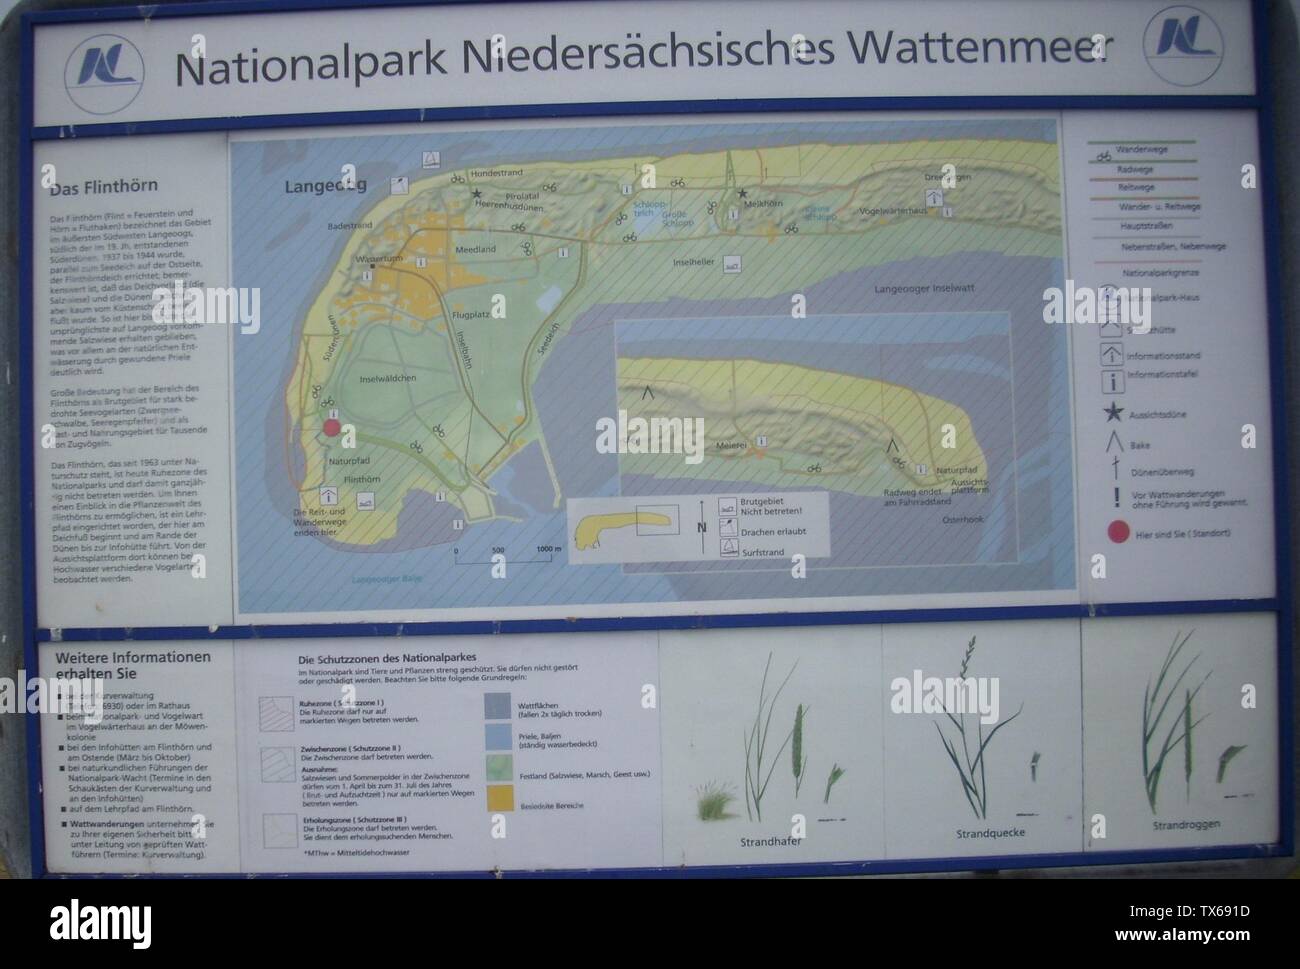 Infotafel am Naturpfad FlinthÃ¶rn auf Langeoog; auf der abgebildeten Karte sind die Bereiche von Langeoog erkennbar, die im Nationalpark NiedersÃ¤chsisches Wattenmeer liegen.; Taken onÂ 14 June 2010; Self-photographed; C.Mezzo-1; Stock Photo